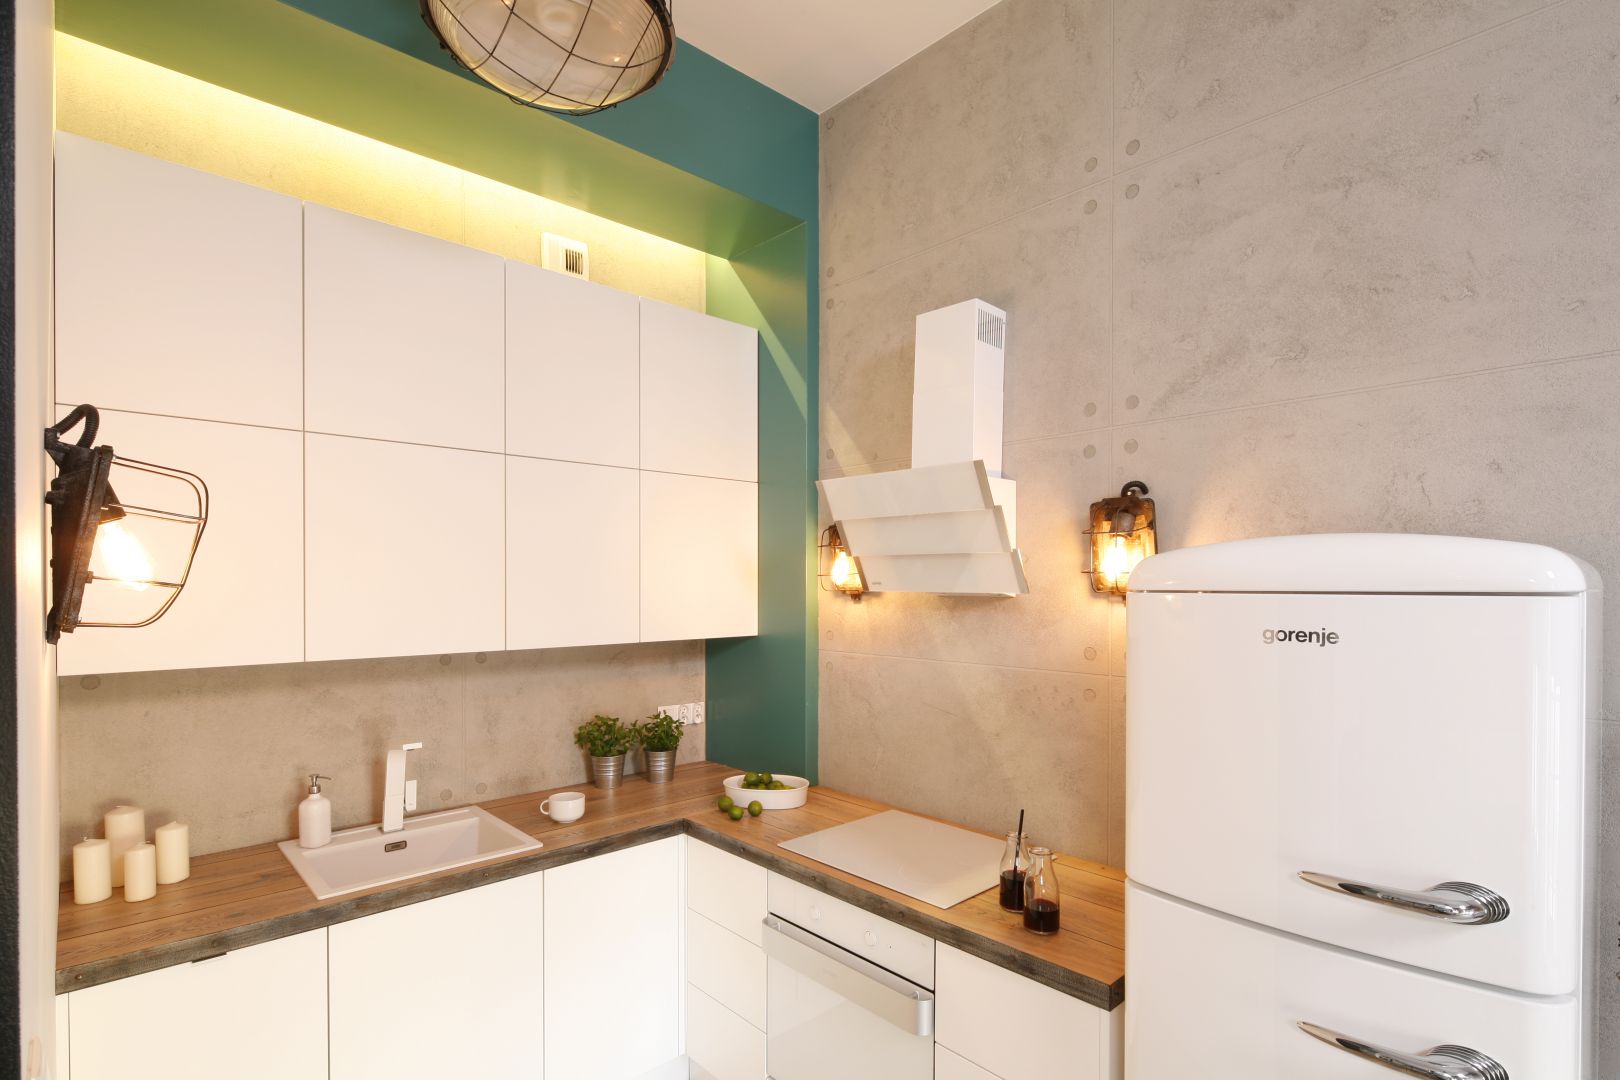 W kuchni w stylu loft betonowa ściana łączy jej przestrzeń z salonem. Projekt Nowa Papiernia. Fot. Bartosz Jarosz.